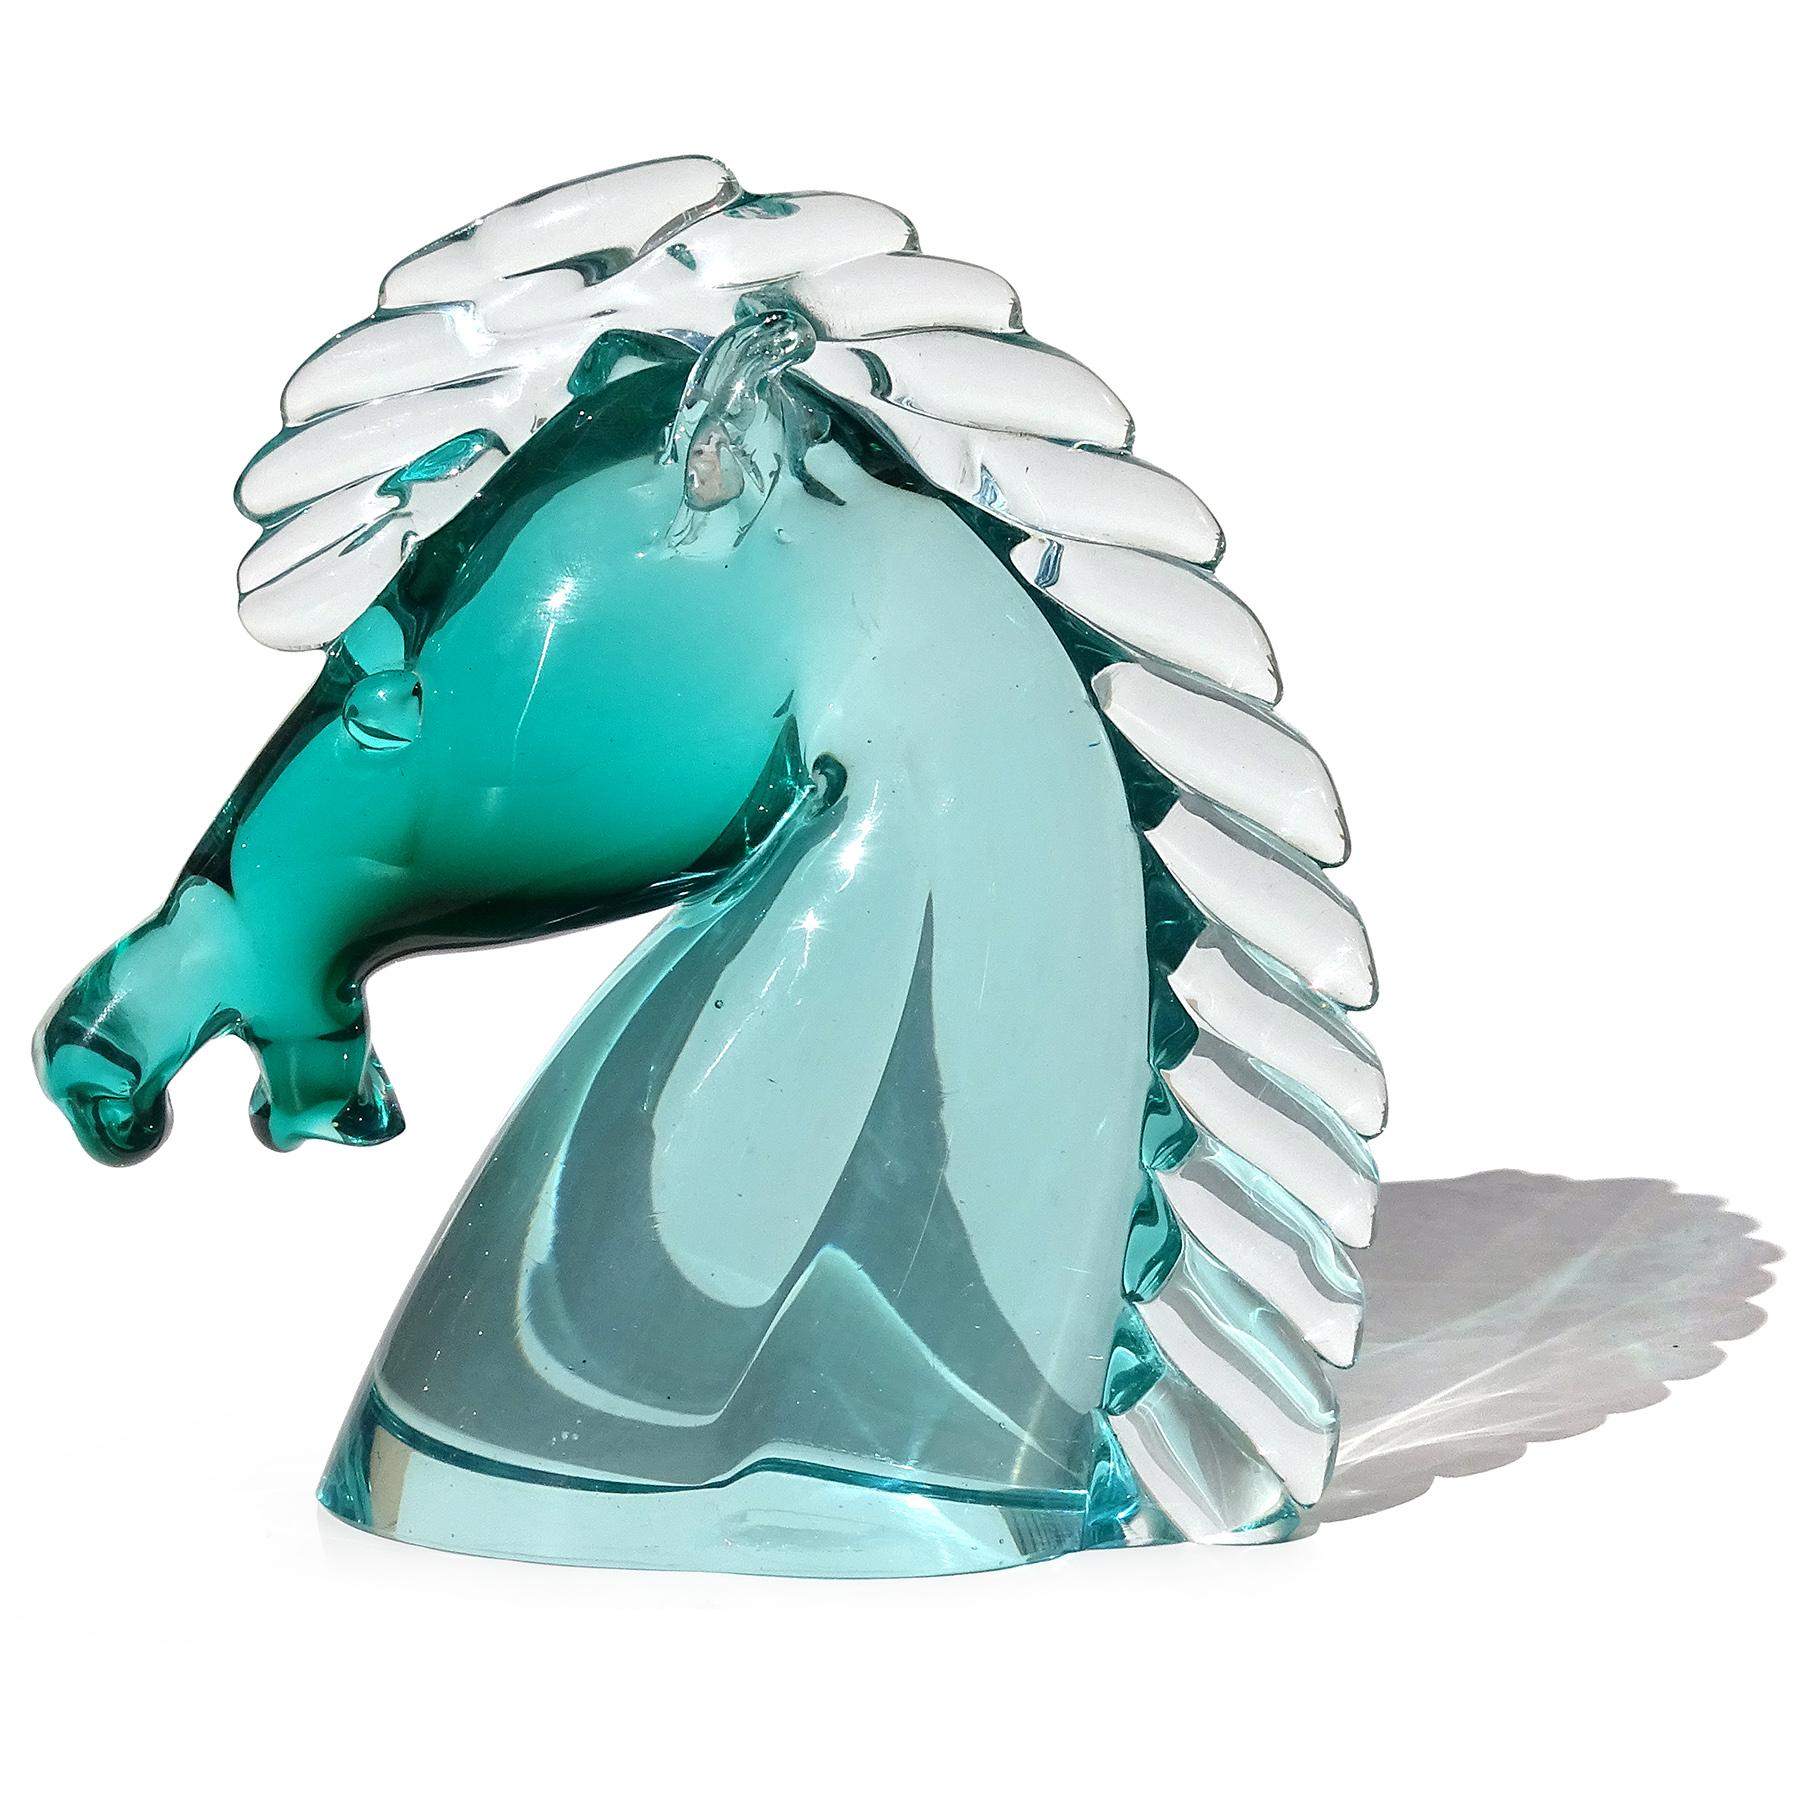 Magnifique sculpture de tête de cheval en verre soufflé à la main de Murano, de couleur verte à claire. La figure est documentée au designer Archimede Seguso, vers les années 1950. Il porte encore l'étiquette festonnée rouge d'origine (mais usée)